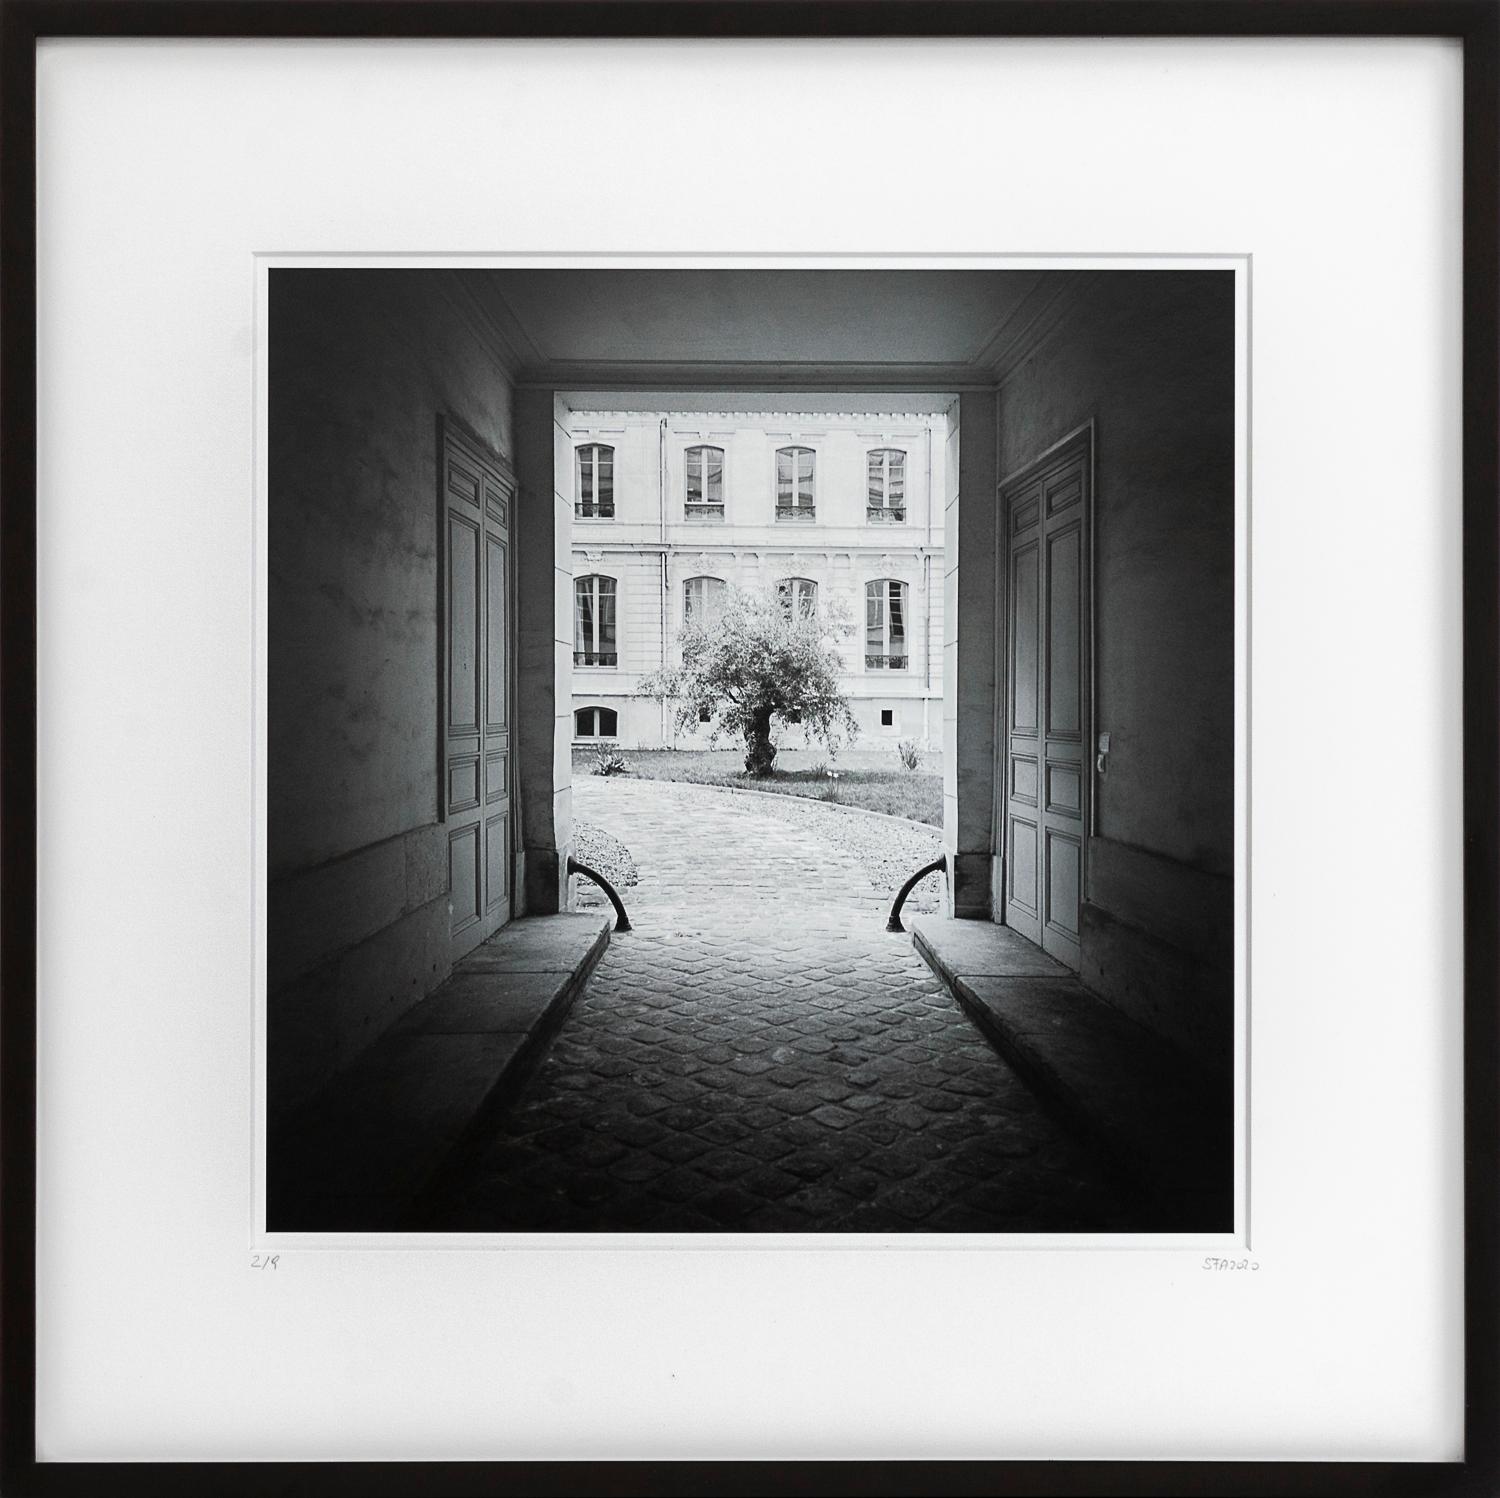 Gerald Berghammer Landscape Photograph – Tree in the Courtyard, Paris, Schwarz-Weiß-Fotografie, Pigmentdruck, gerahmt